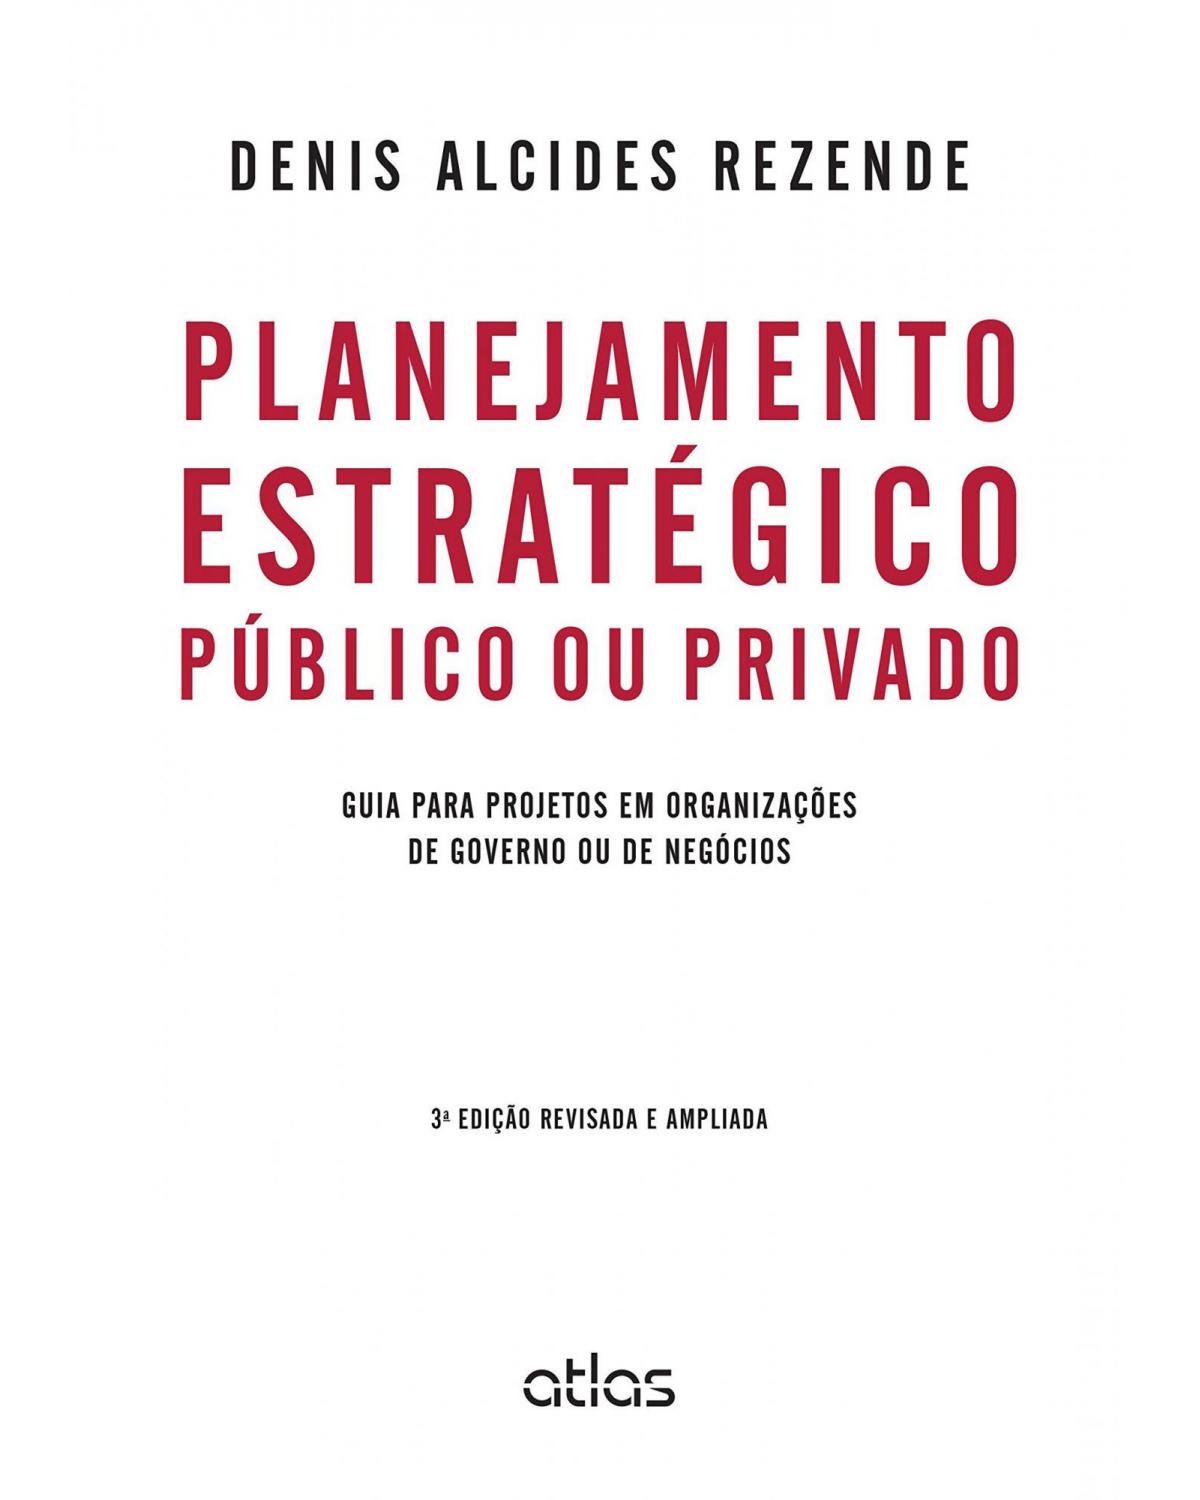 Planejamento estratégico público ou privado - Guia para projetos em organizações de governo ou de negócios - 3ª Edição | 2015